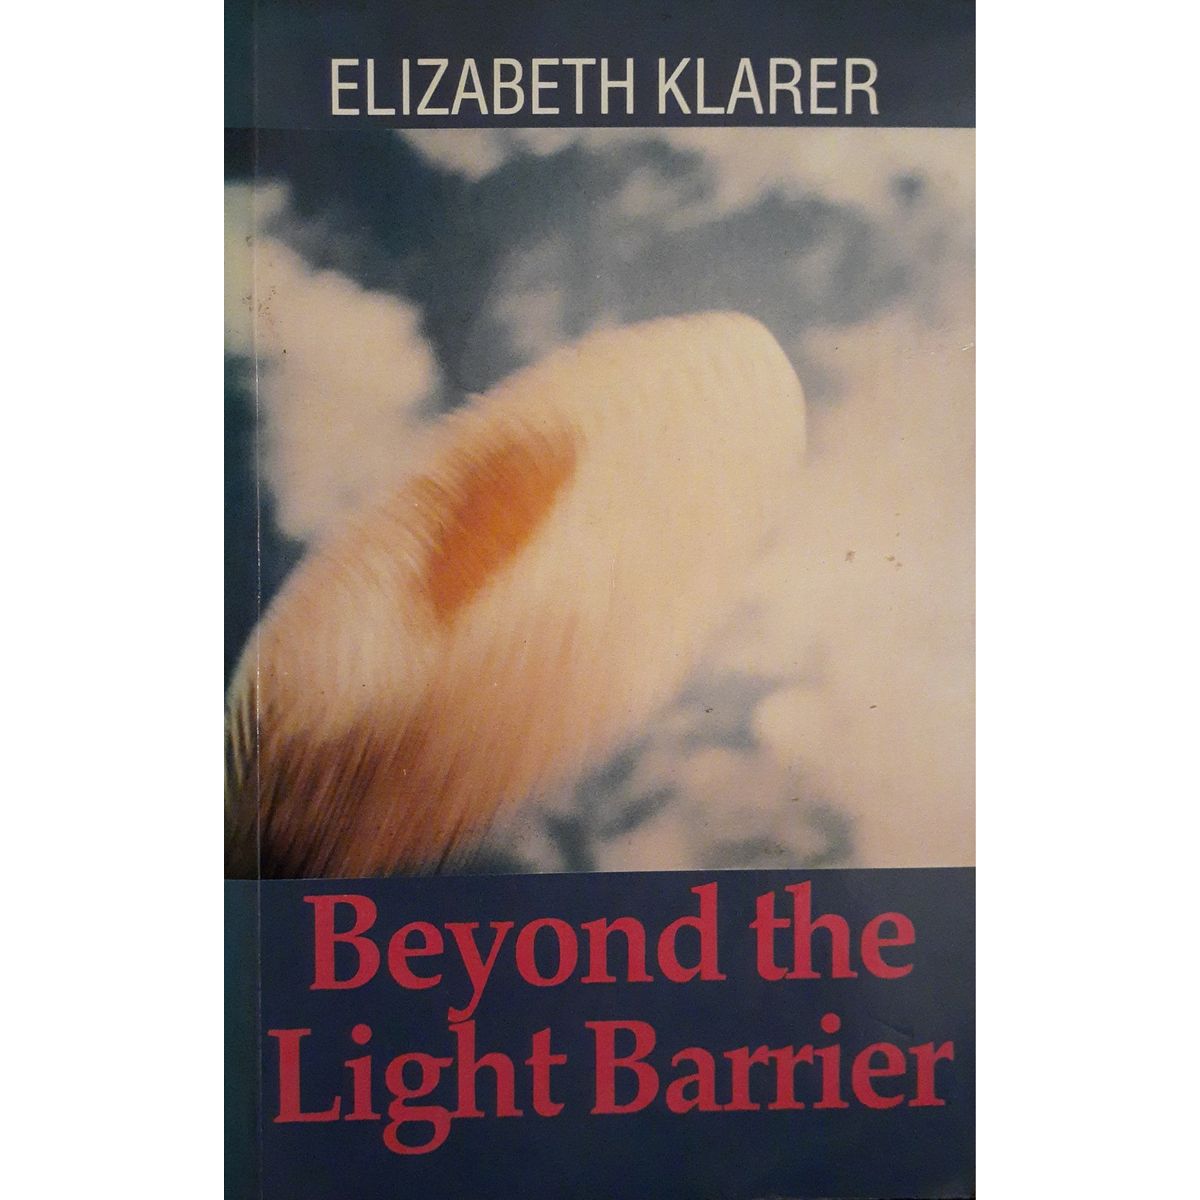 ISBN: 9780869781784 / 0869781782 - Beyond the Light Barrier by Elizabeth Klarer [1991]